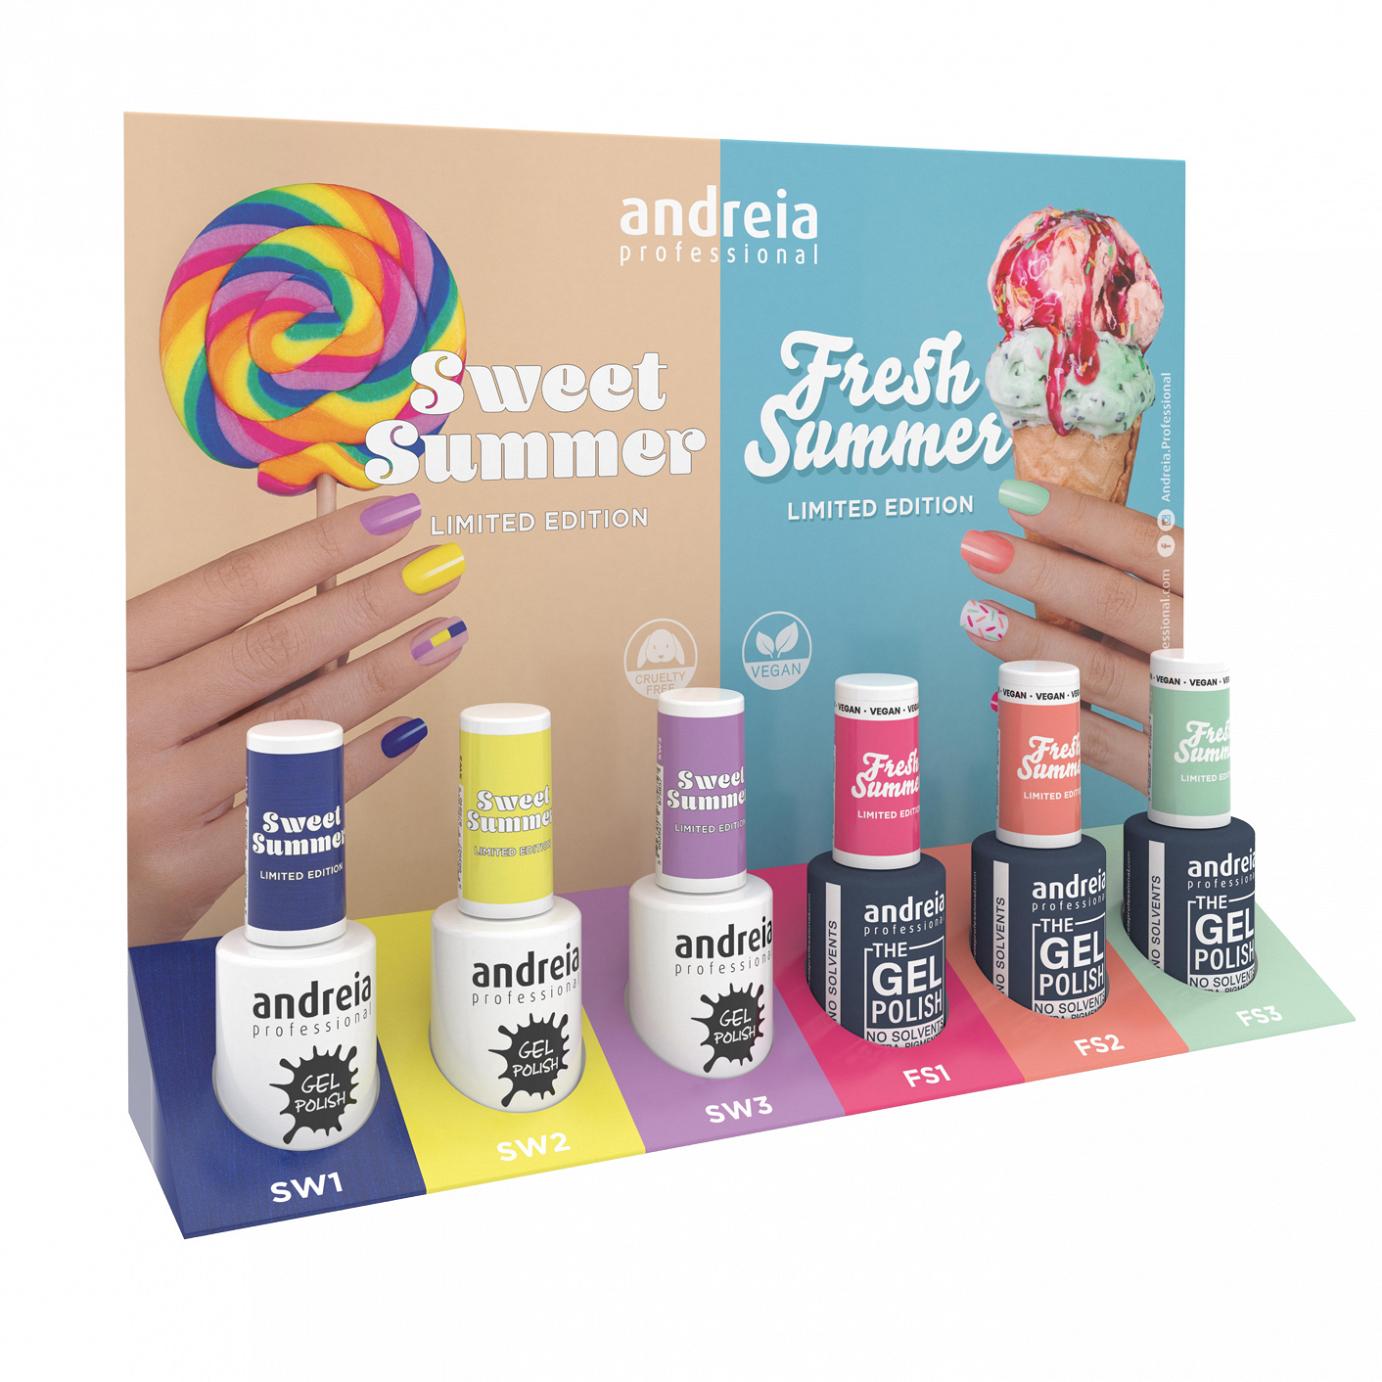 Andreia de veniz de unhas de gel coleção Fresh Summer & Sweet Summer